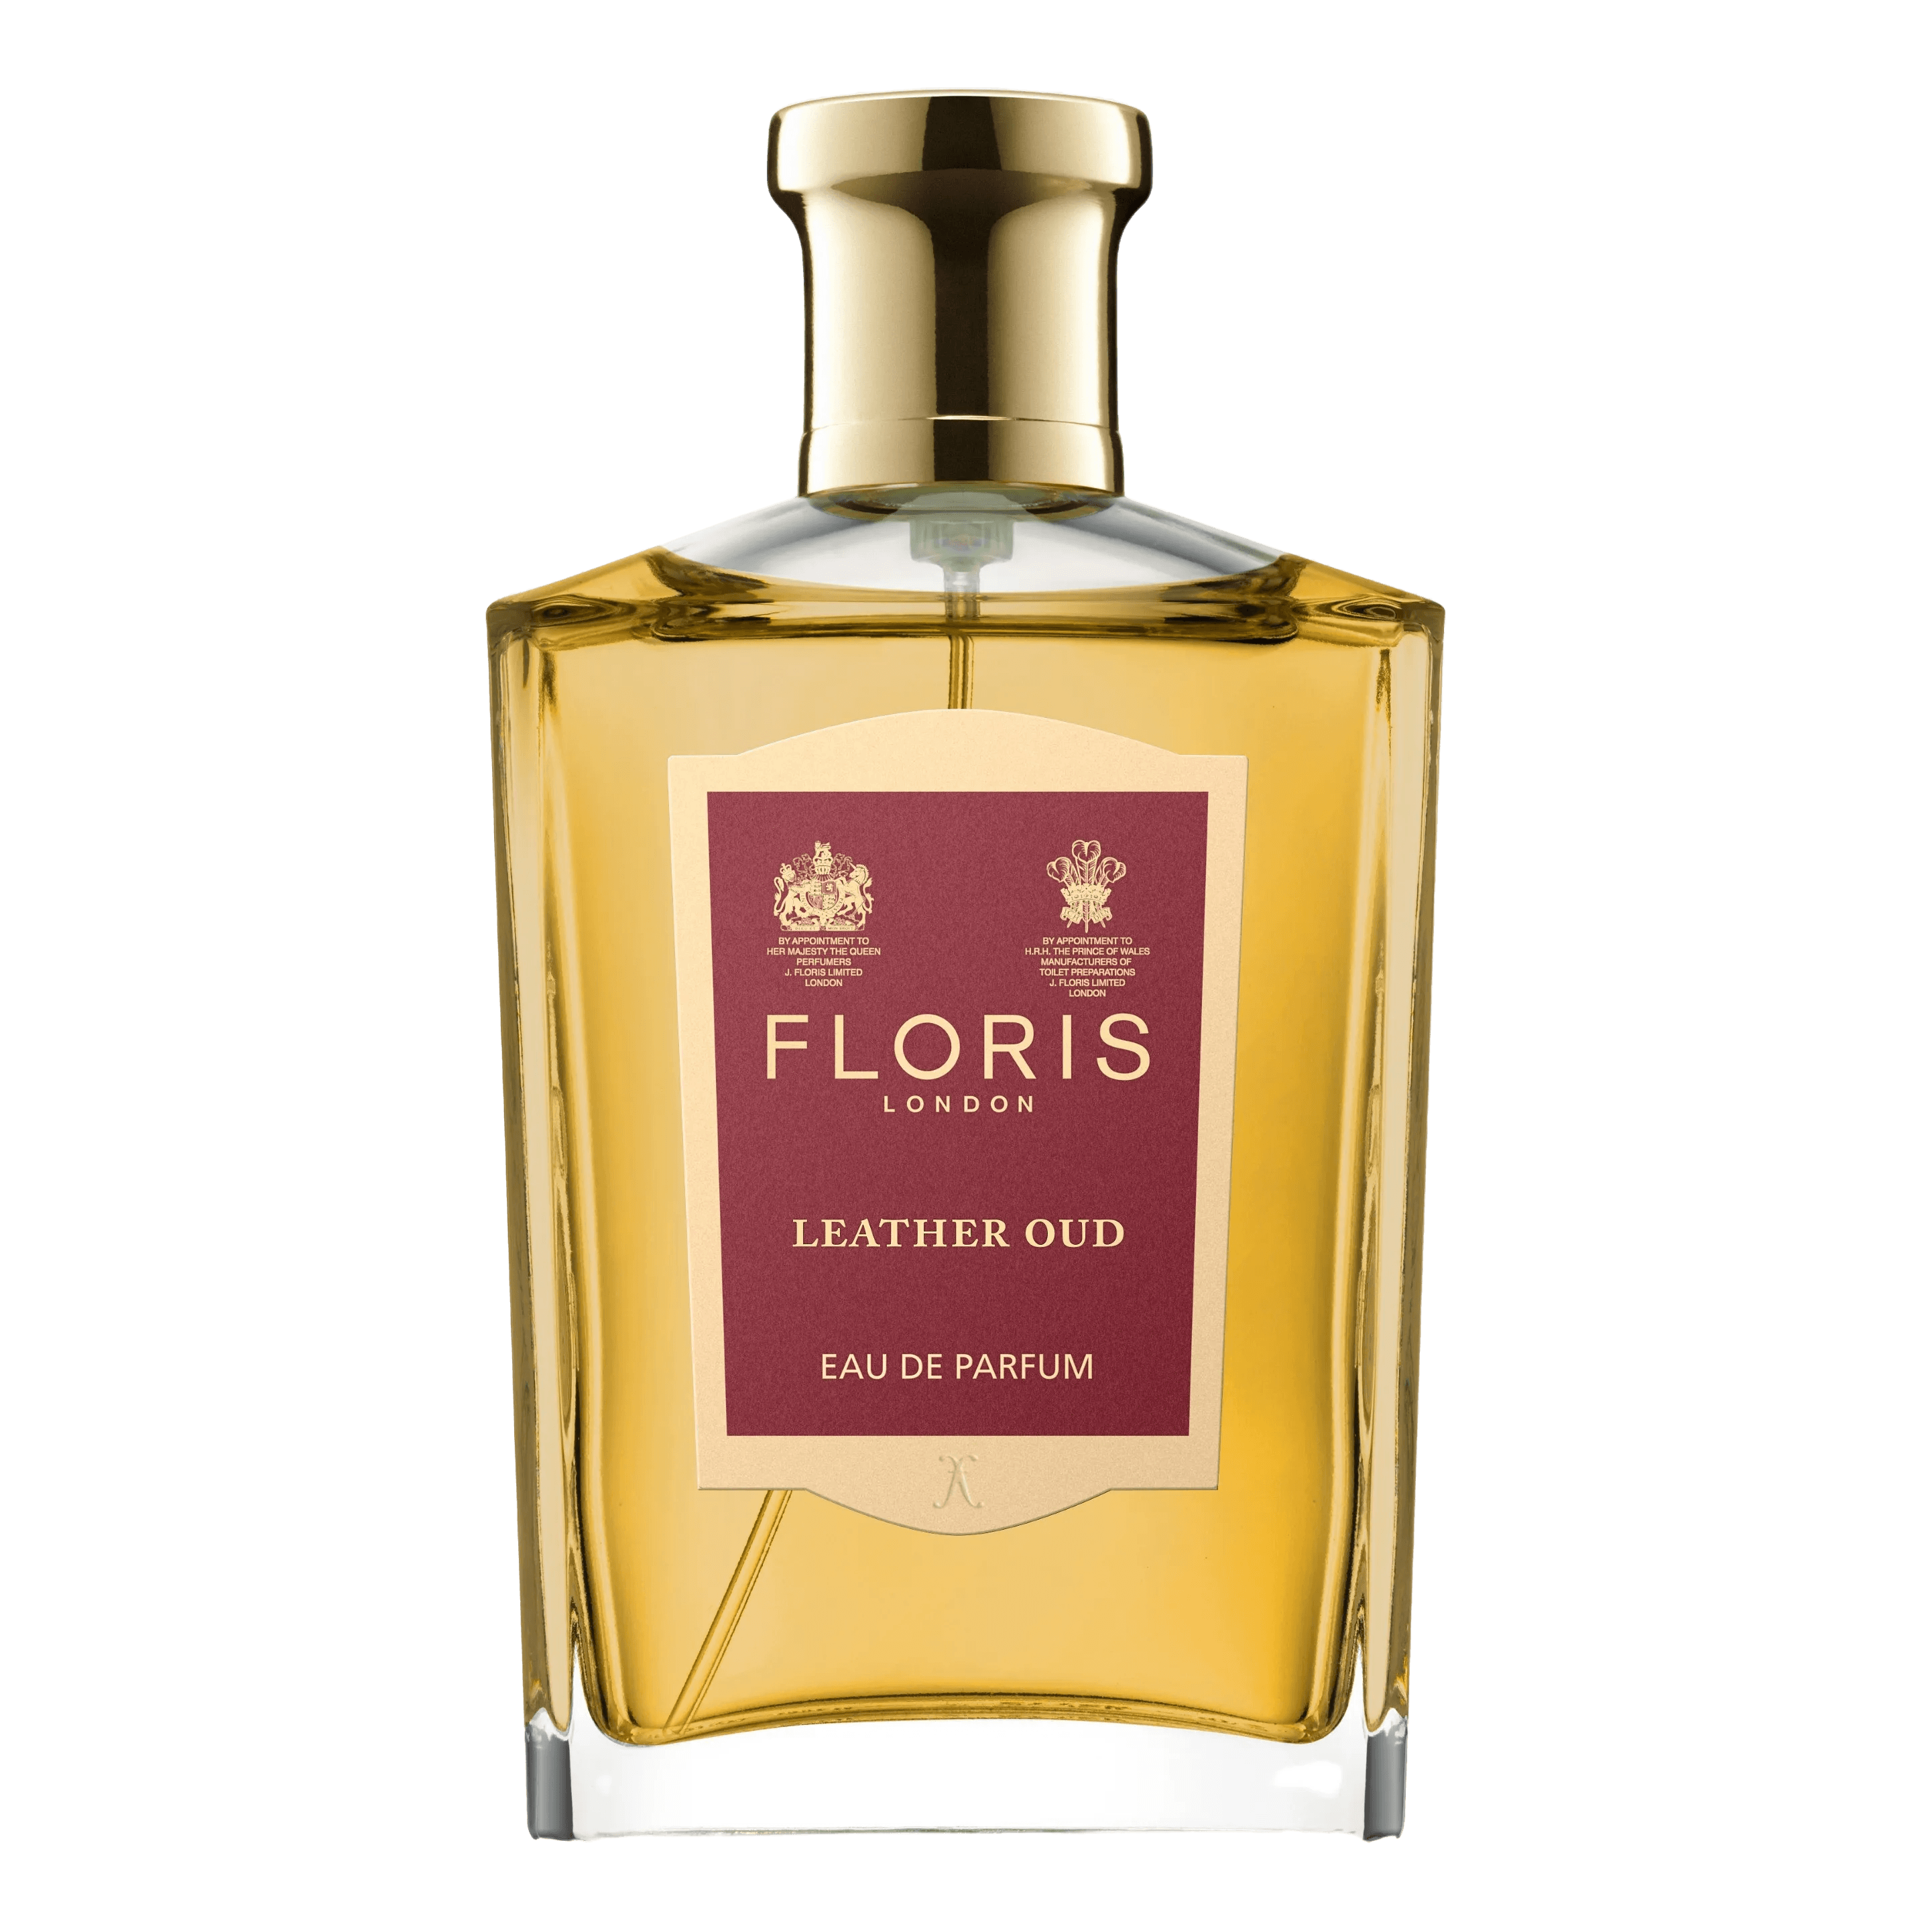 Floris London Leather Oud Eau de Parfum